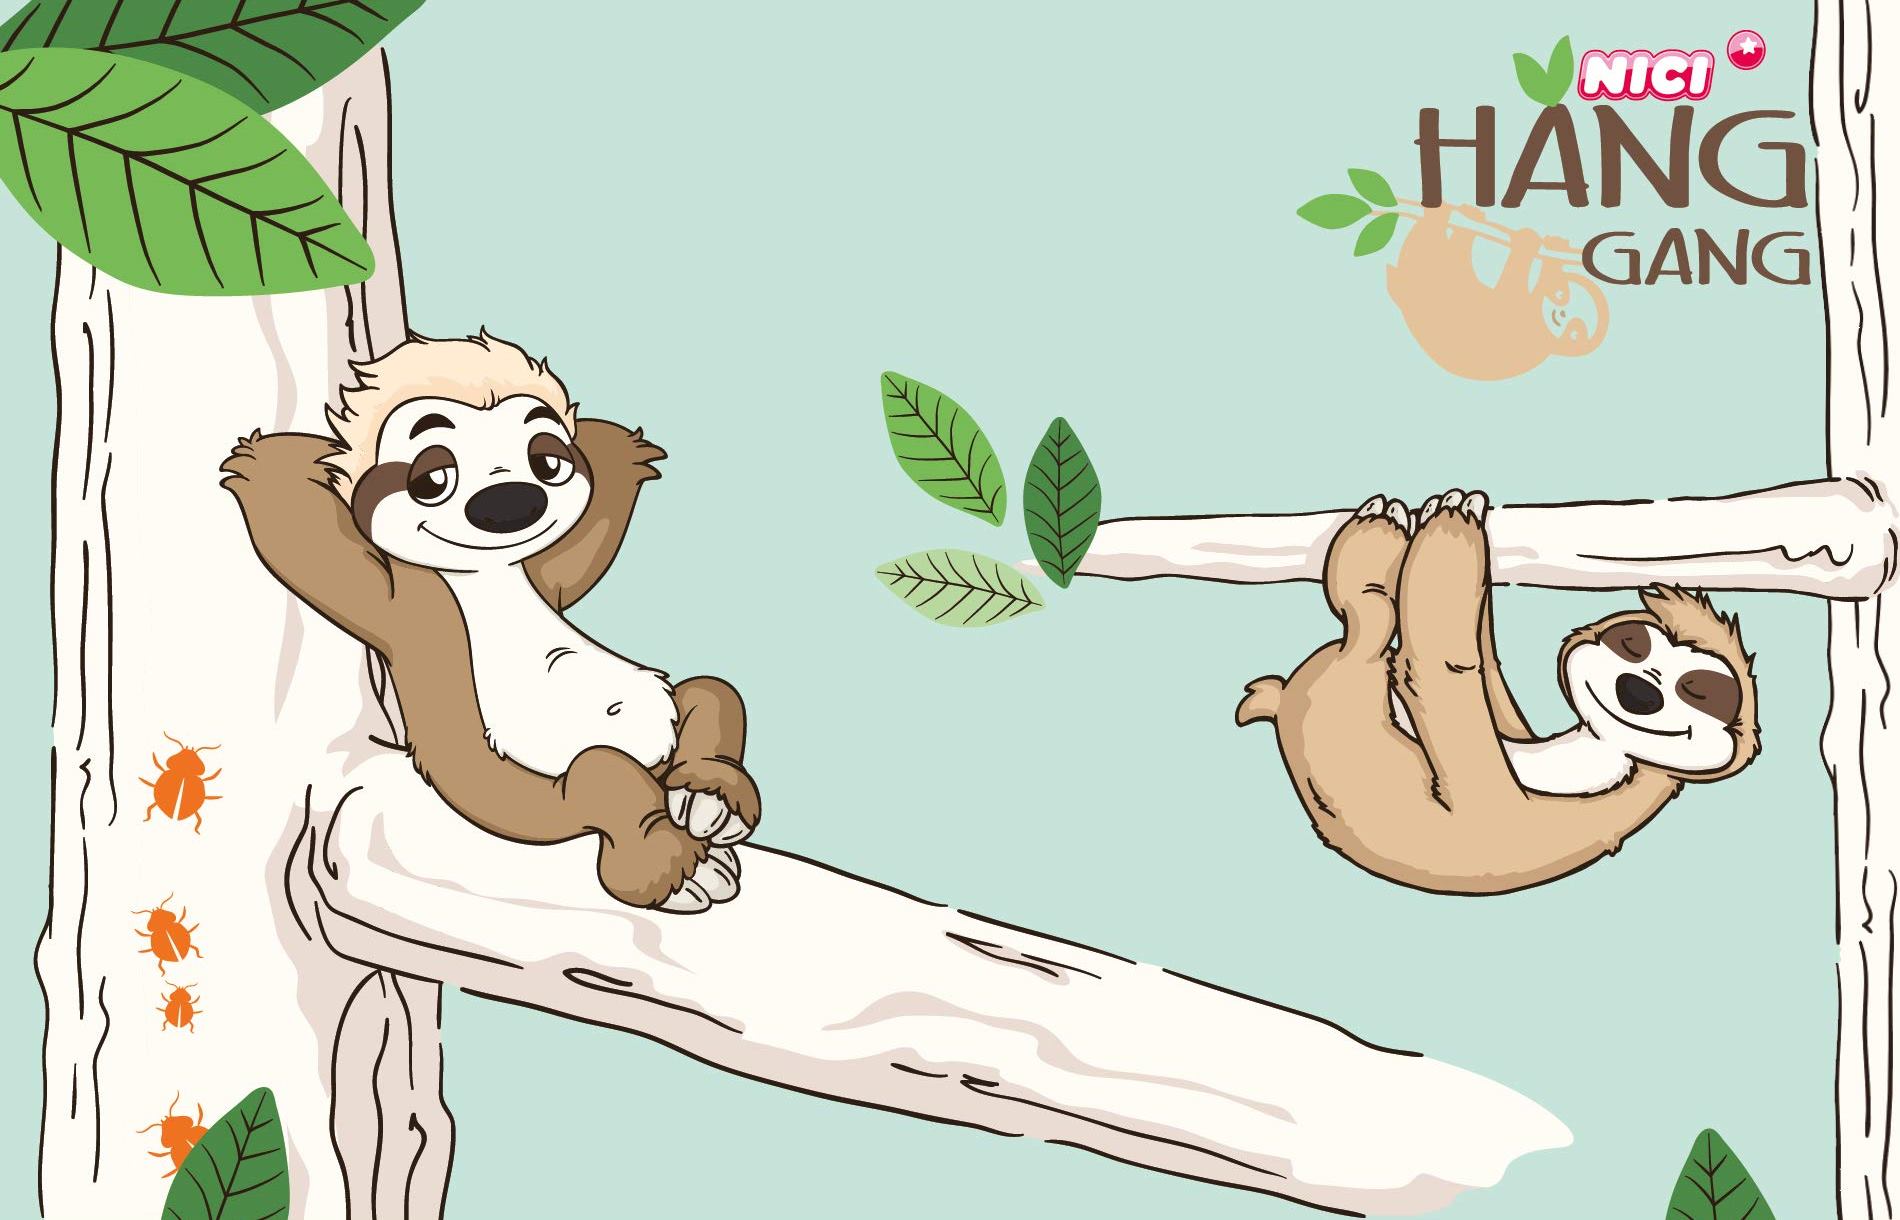 Plyšová hračka NICI Hang Gang Dangling Sloth má načechraný hnědo-béžový kabátek a velice roztomilý kukuč, díky čemuž uchvátí všechny kluky i holky bez rozdílu.